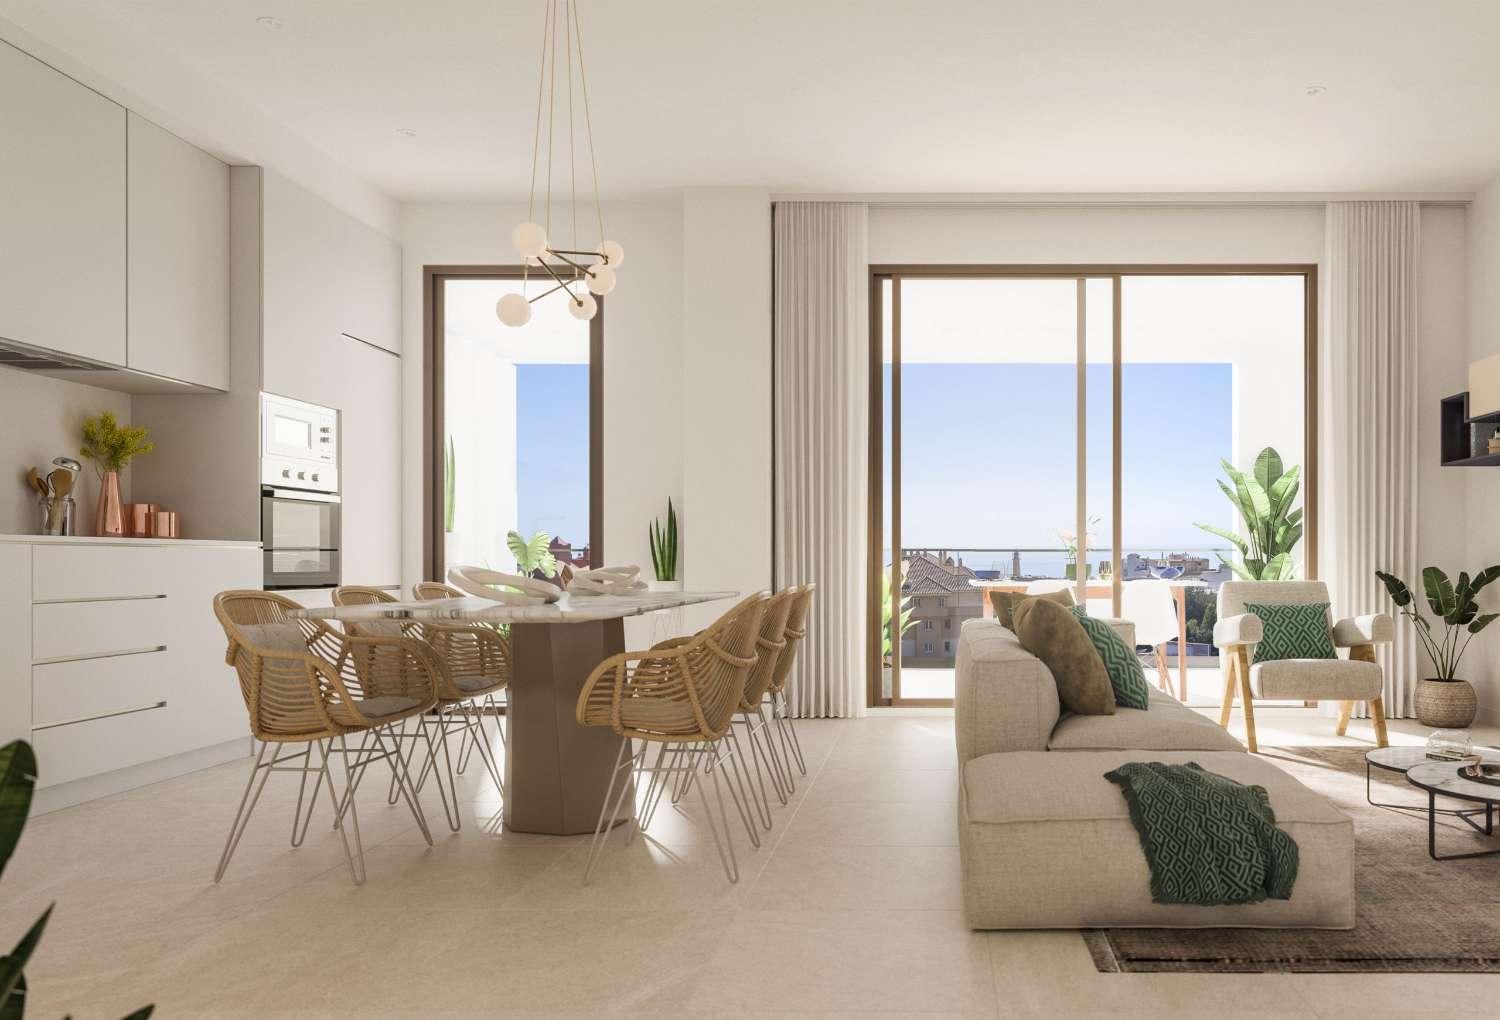 2 of 3 slaapkamers, 2 badkamers en een terras met uitzicht op zee – vanaf € 218.000